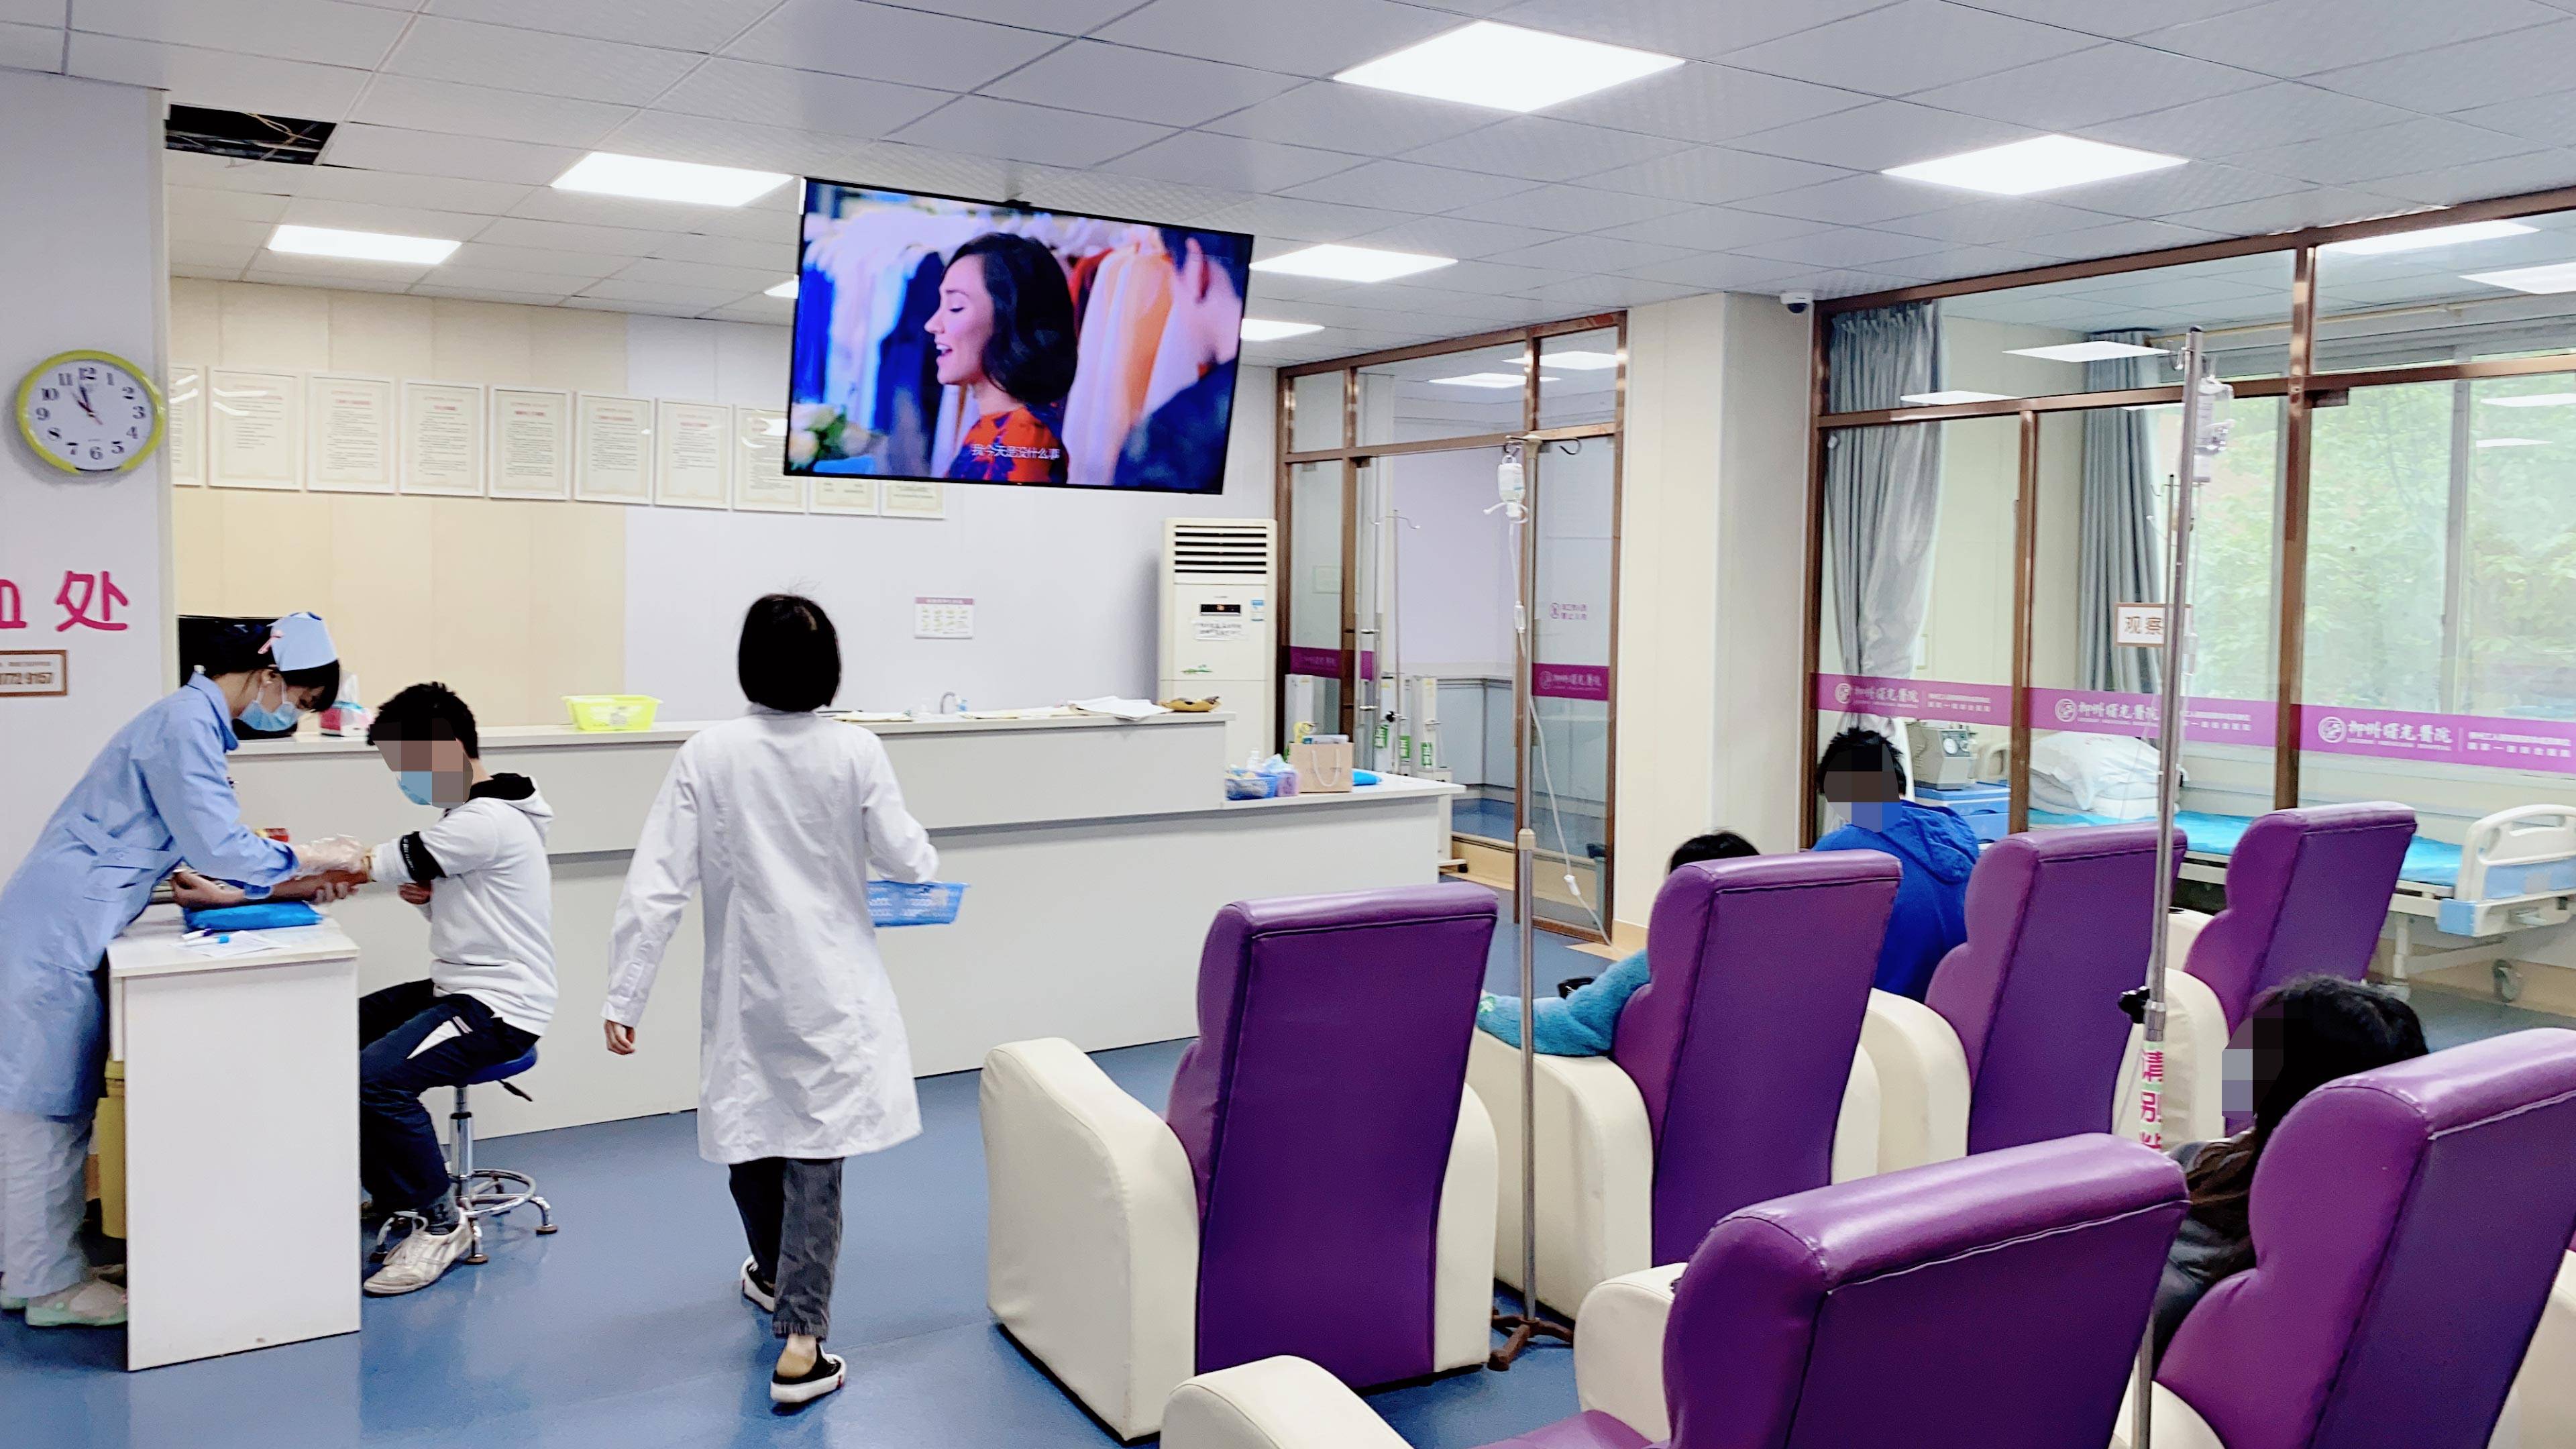 柳州曙光妇科医院一向坚持暖心服务,健康的有力后盾